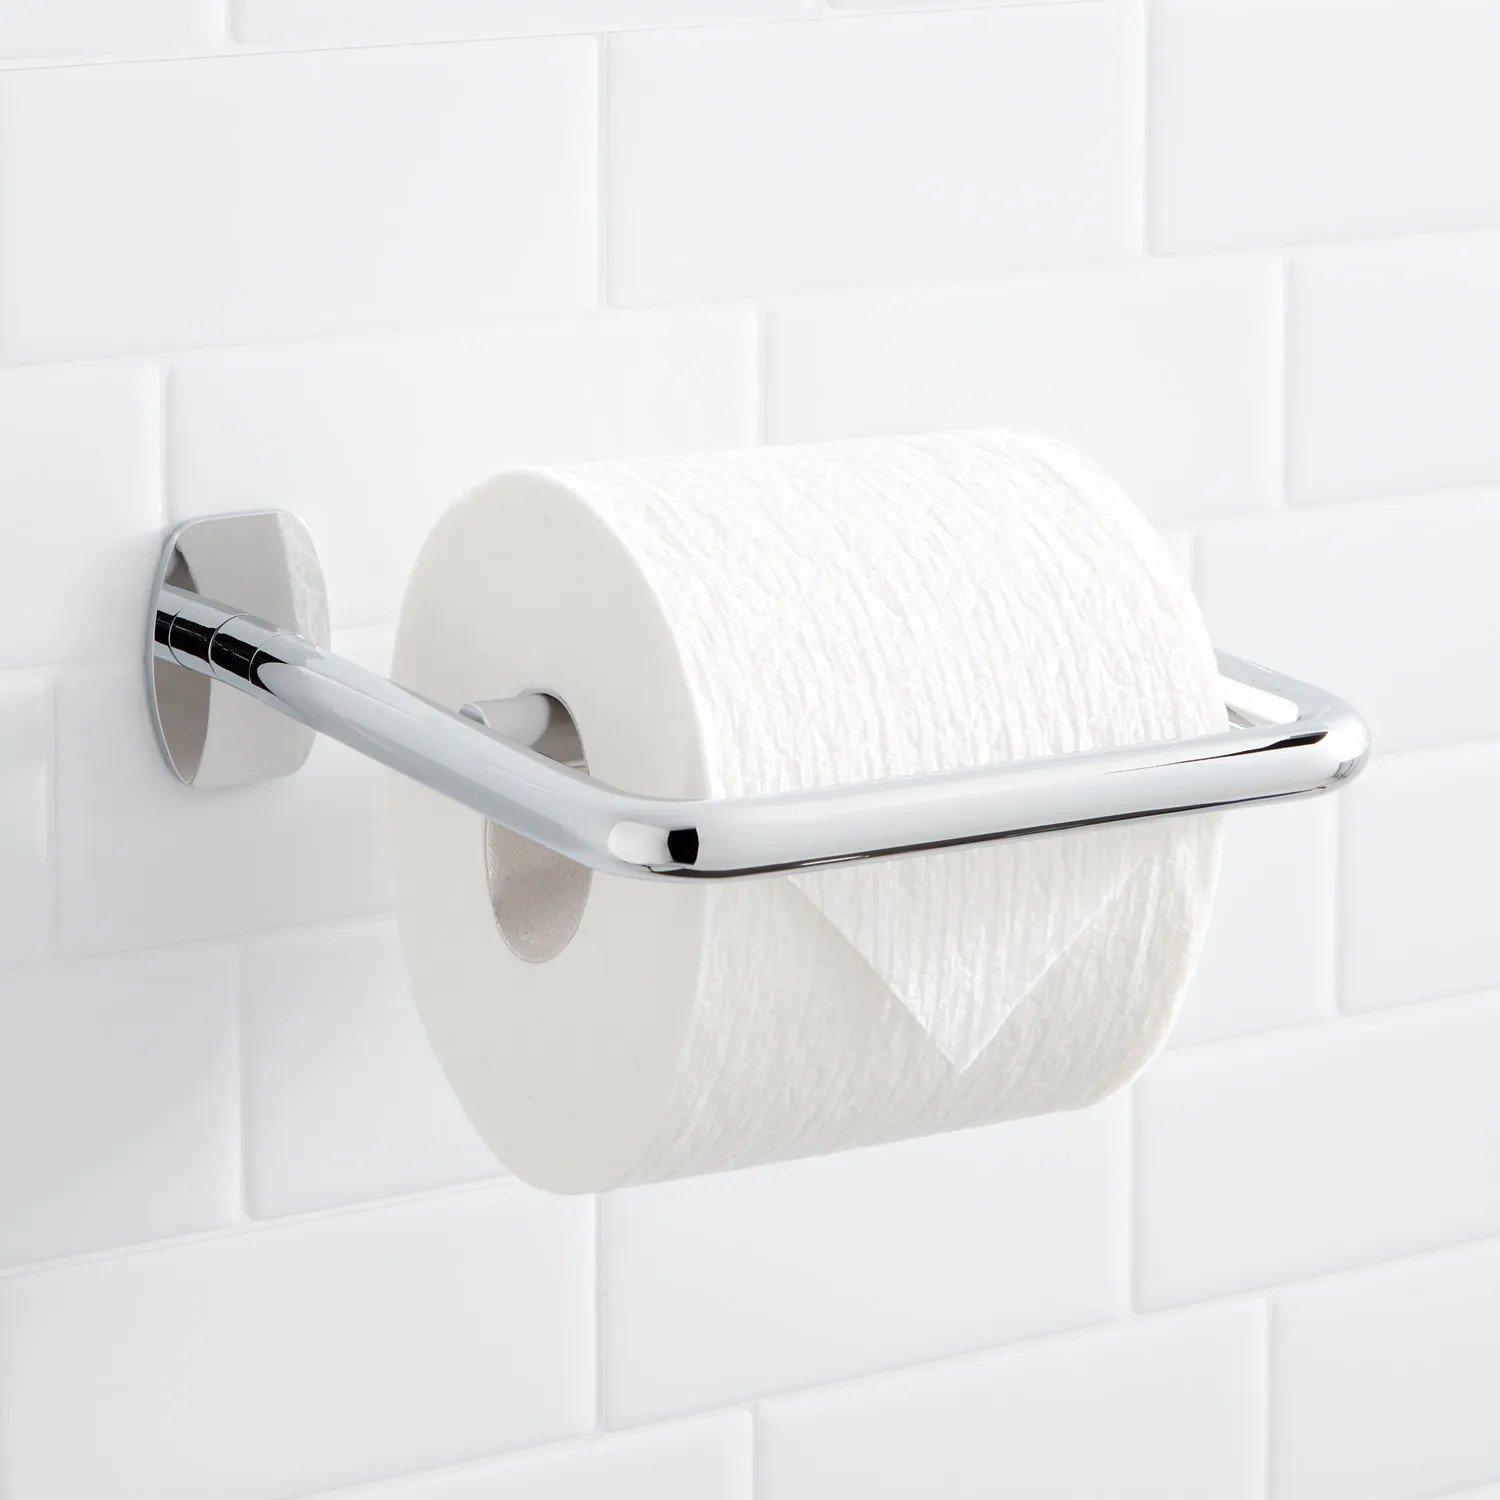 https://images.signaturehardware.com/i/signaturehdwr/493930-toilet-paper-holder-chrome.jpg